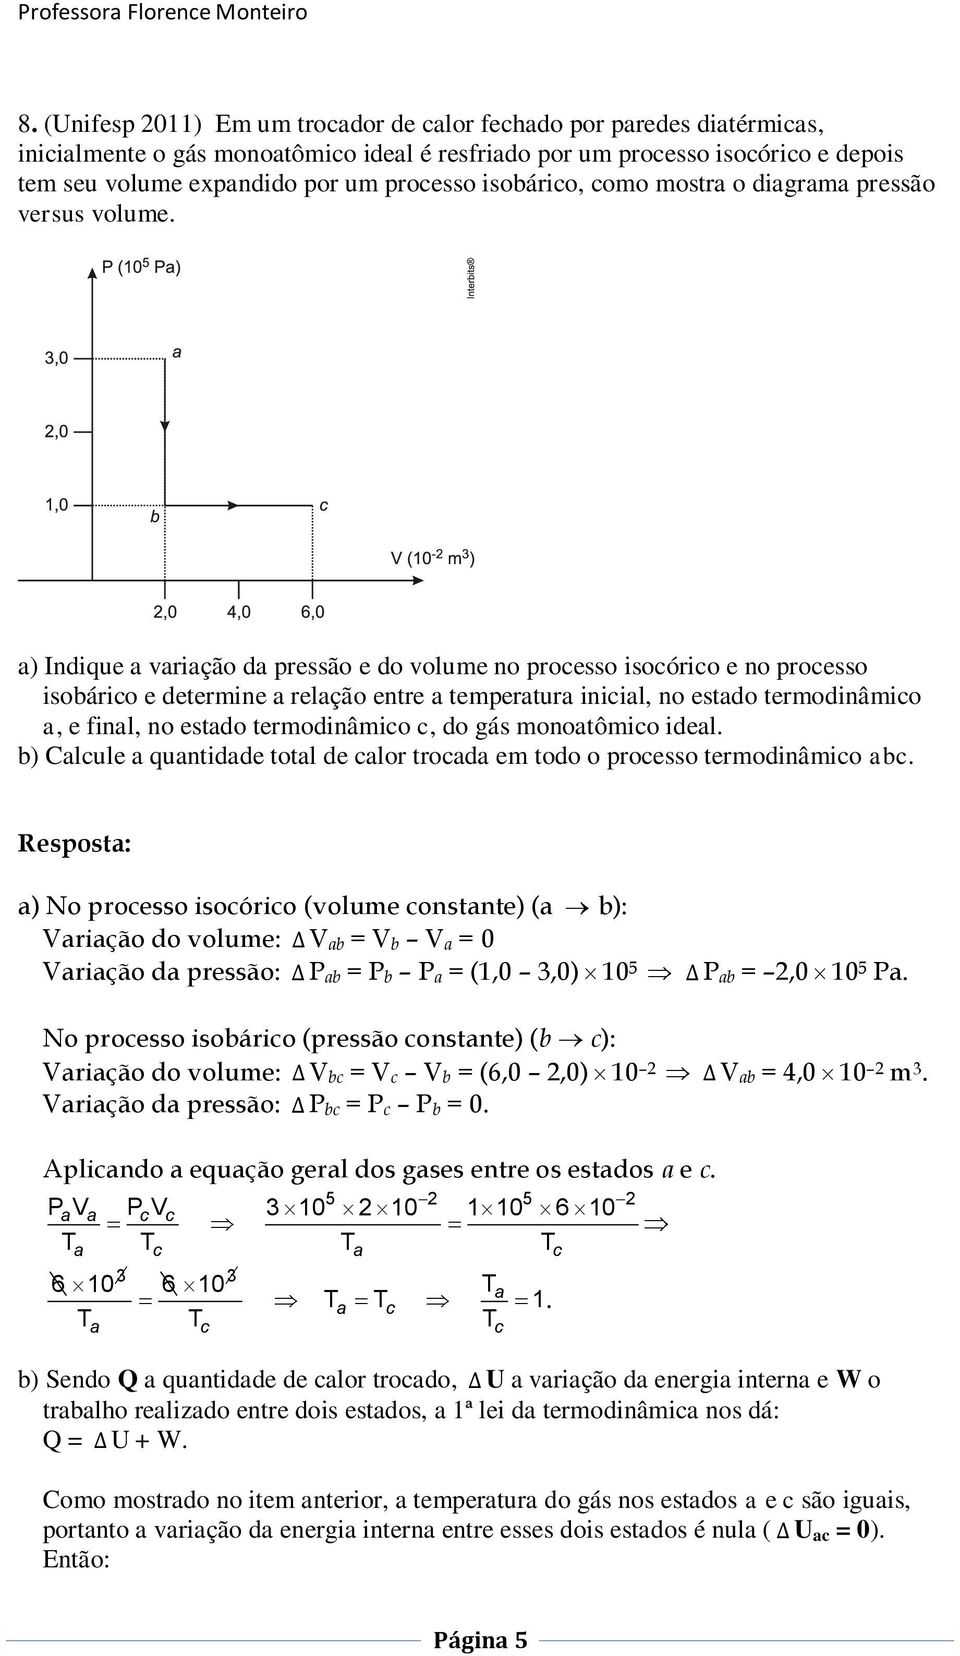 a) Indique a variação da pressão e do volume no processo isocórico e no processo isobárico e determine a relação entre a temperatura inicial, no estado termodinâmico a, e final, no estado